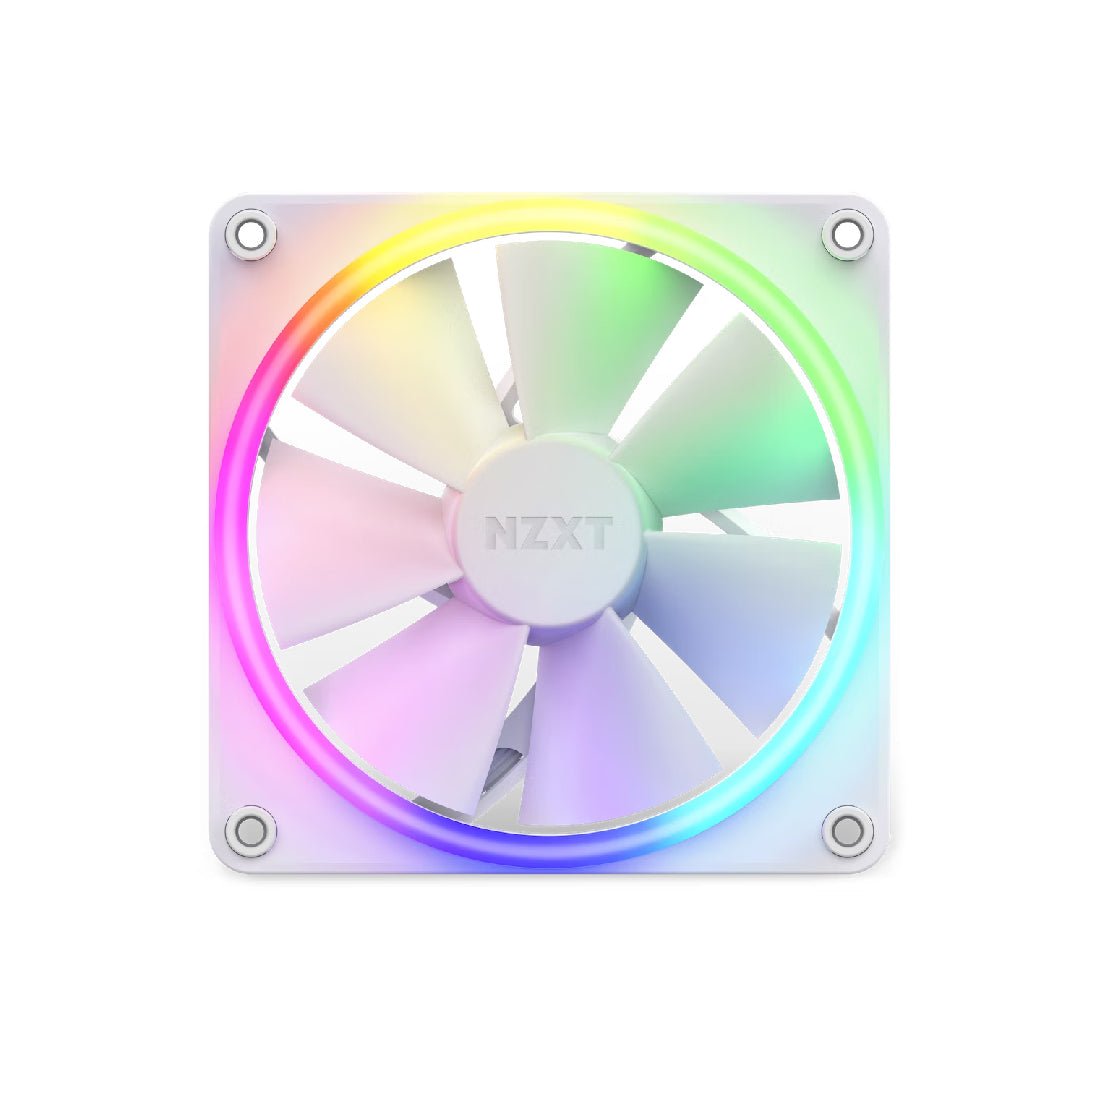 NZXT F120 120mm RGB Single Fan - White - مروحة تبريد - Store 974 | ستور ٩٧٤